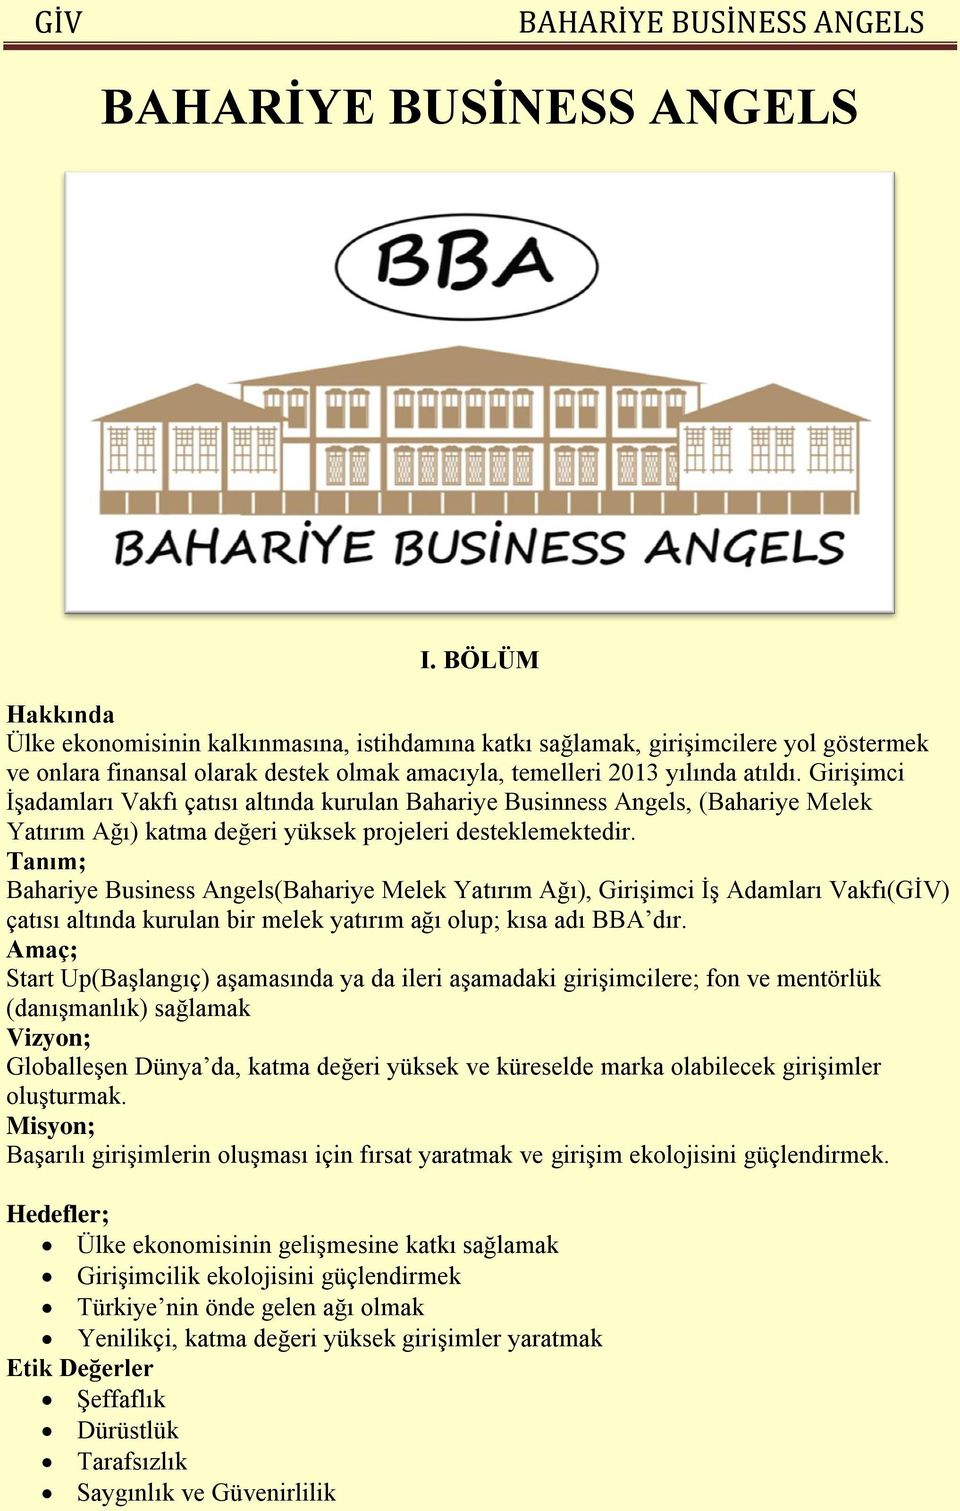 Tanım; Bahariye Business Angels(Bahariye Melek Yatırım Ağı), Girişimci İş Adamları Vakfı(GİV) çatısı altında kurulan bir melek yatırım ağı olup; kısa adı BBA dır.